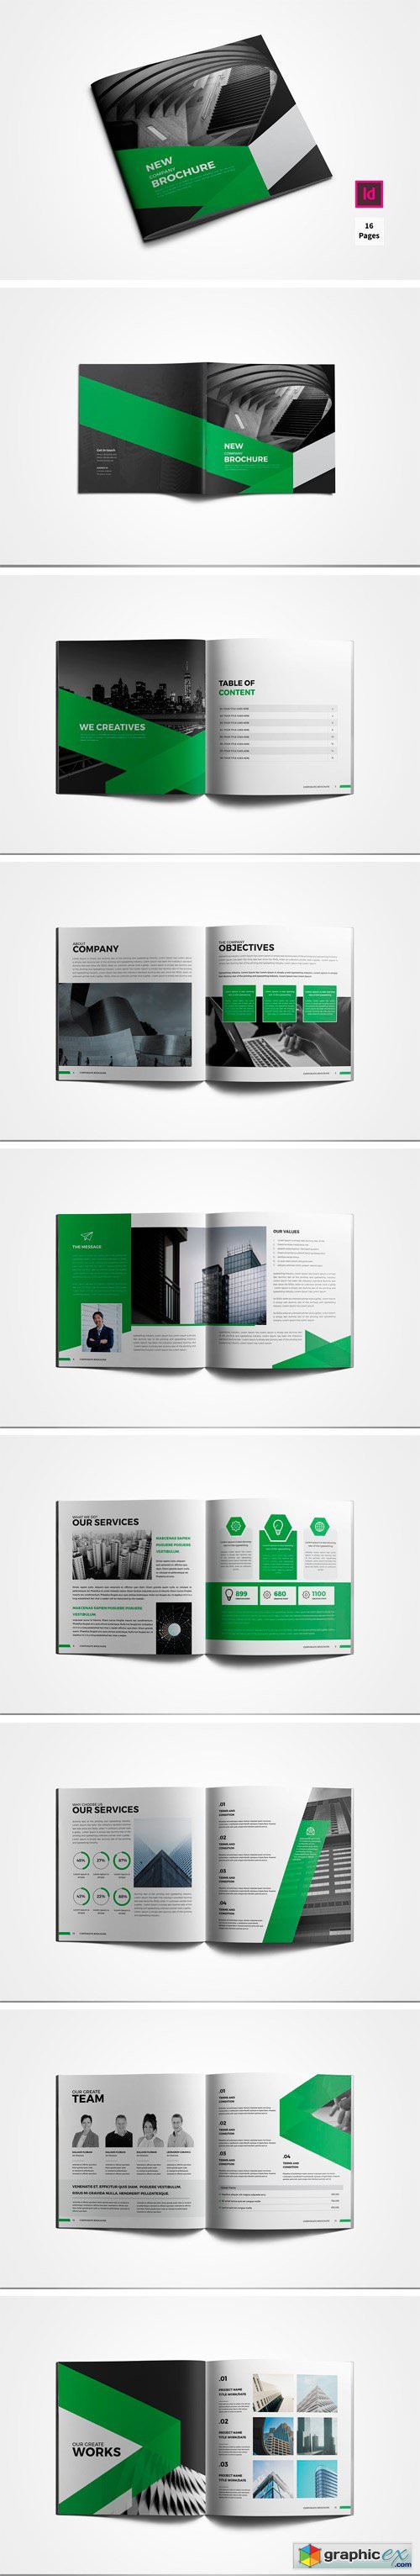 Square Company Profile Brochure